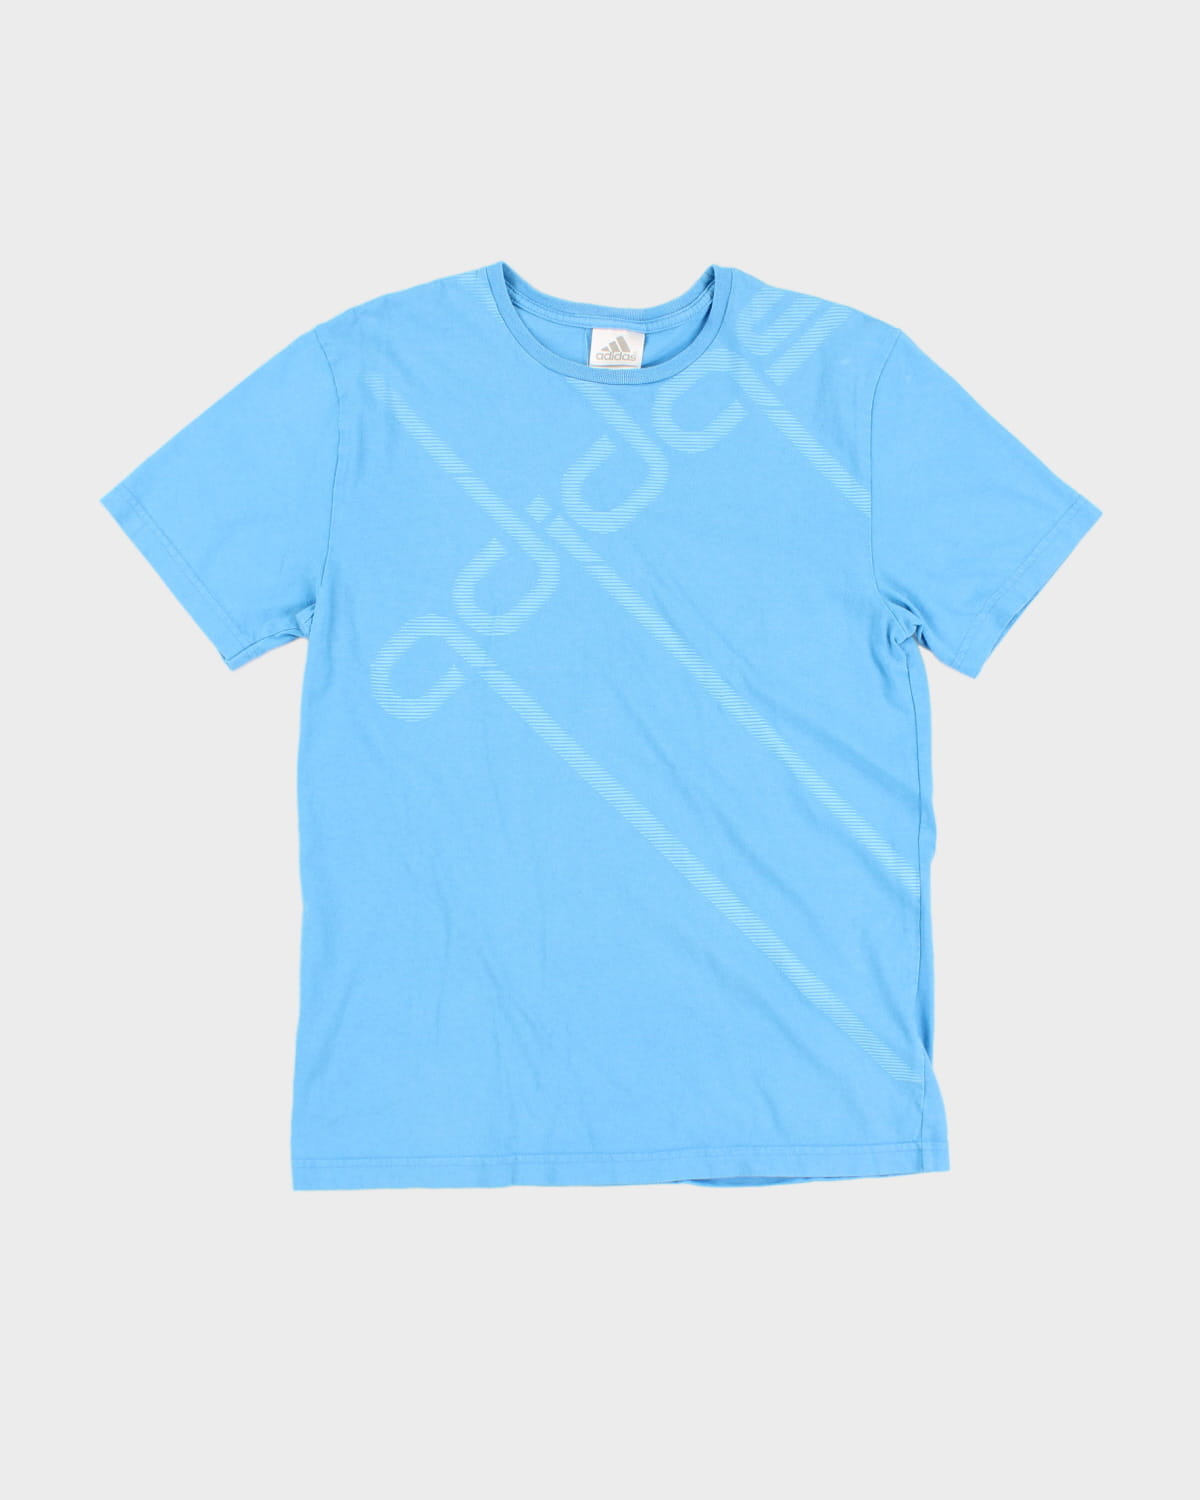 90's Men's Blue Adidas T-Shirt - XL